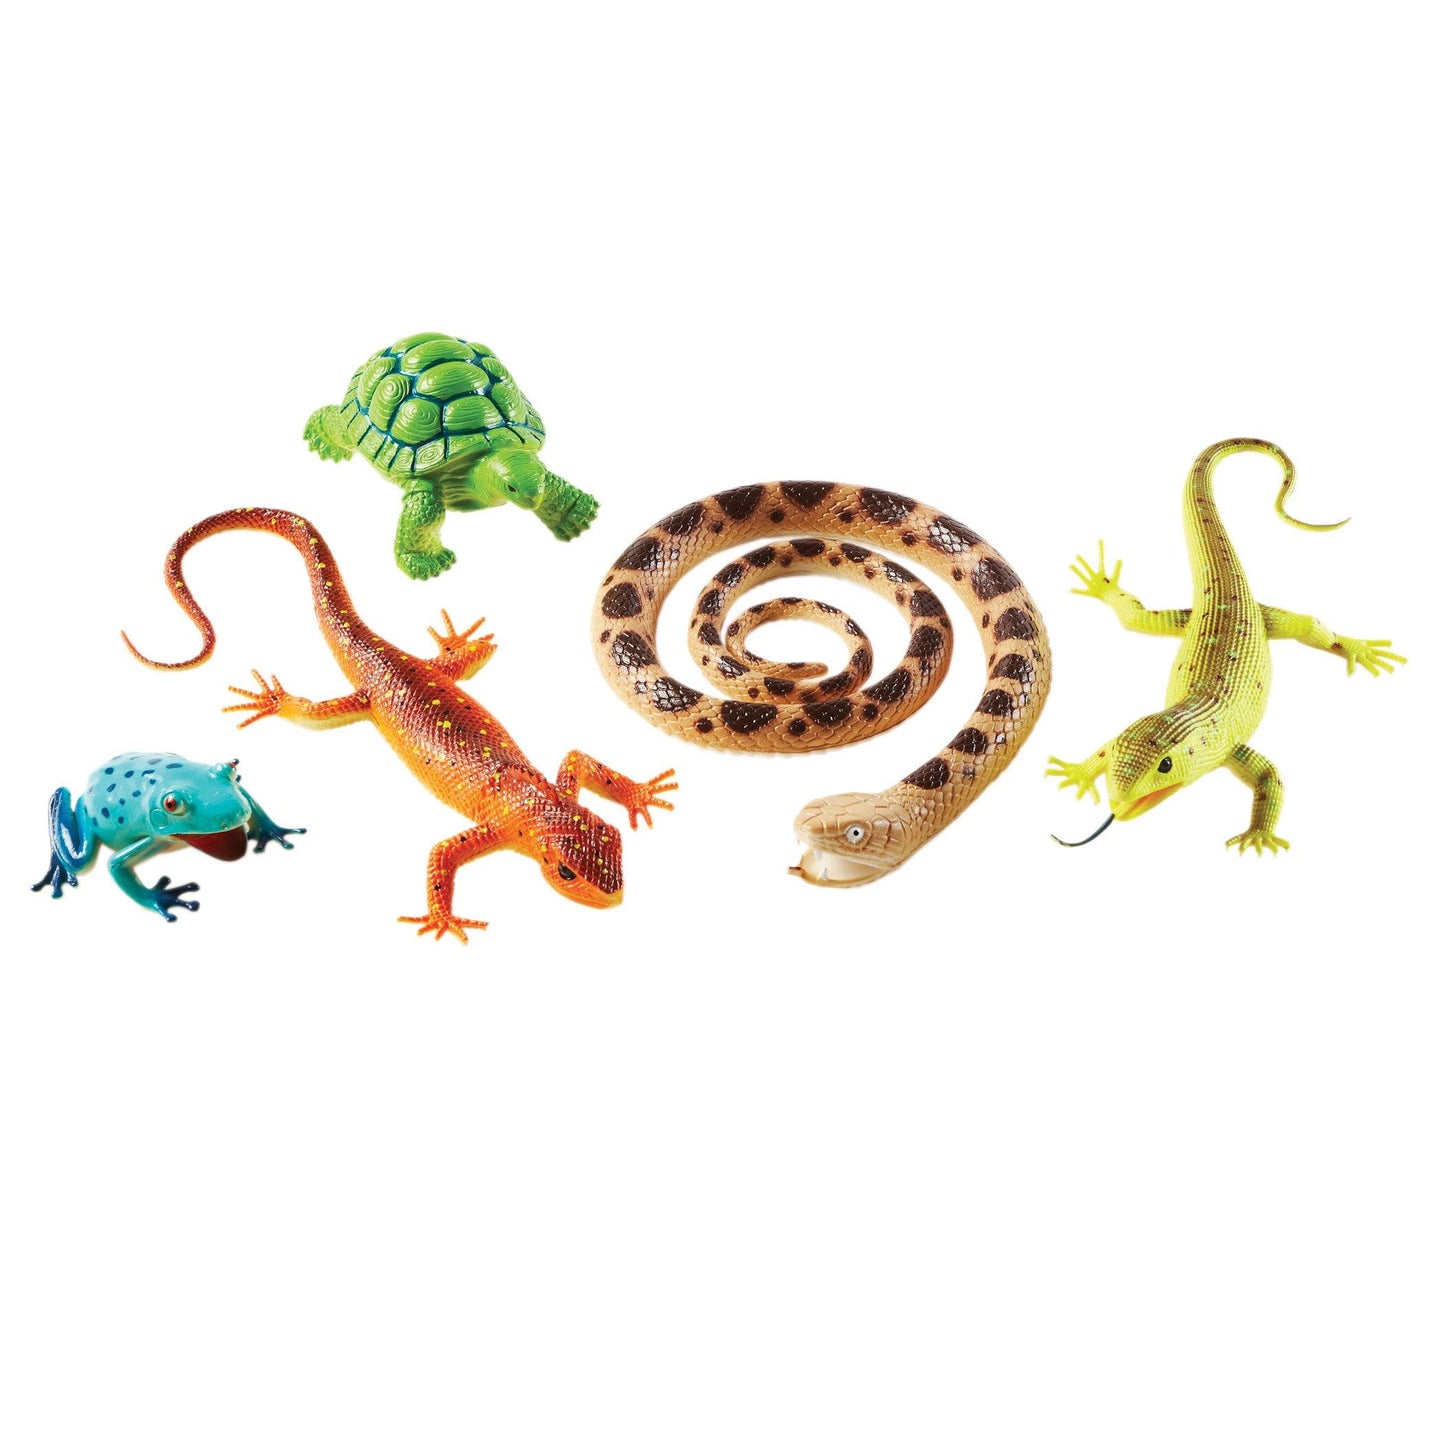 Jumbo Reptiles & Amphibians, Set of 5 - Loomini